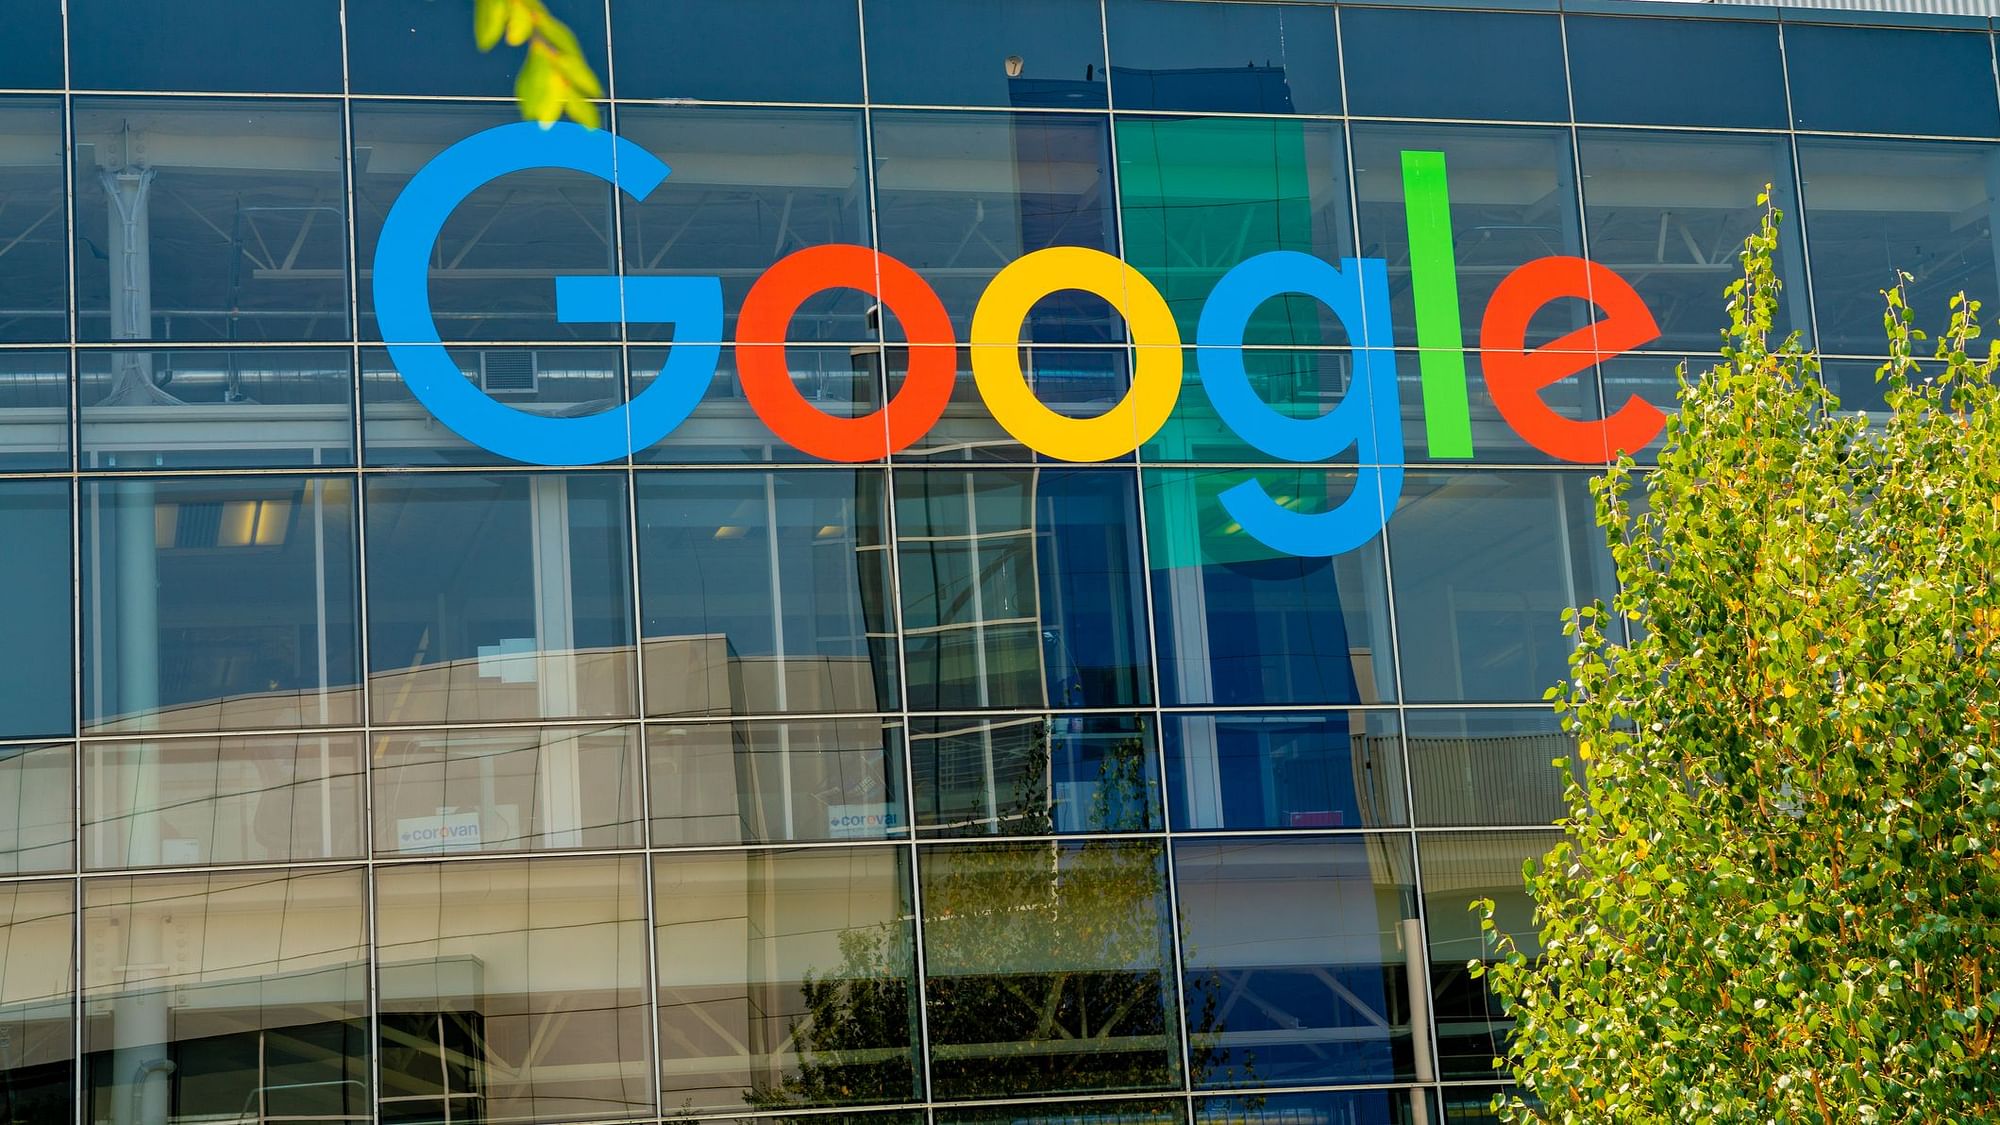 गूगल ने इससे पहले जनवरी 2021 तक घर से काम करने की अनुमति दी थी